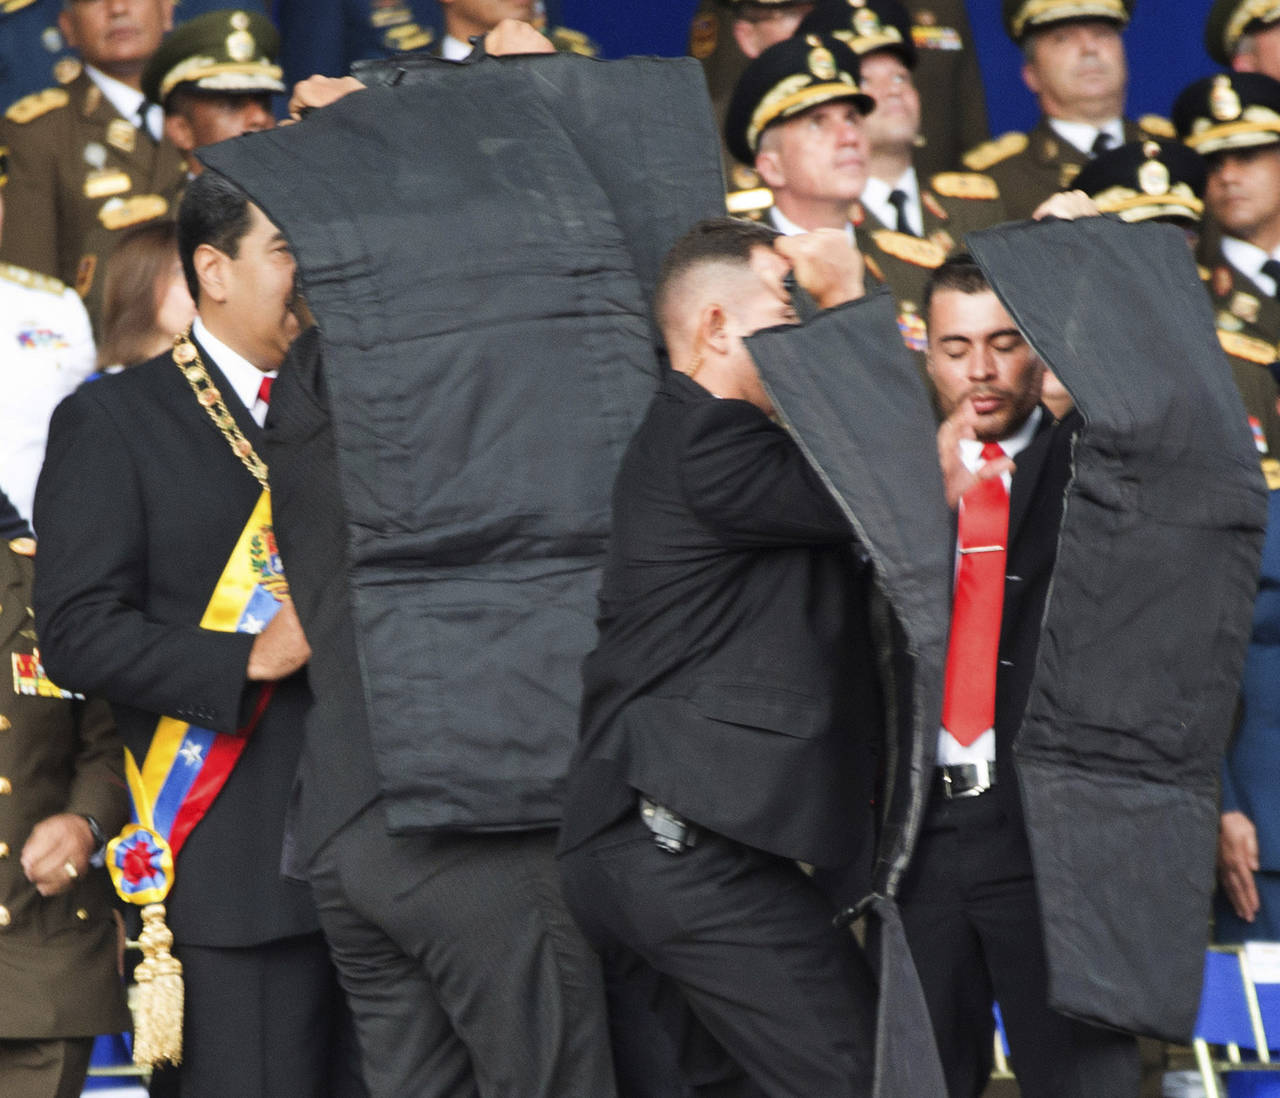 Reacción. Luego de una primera explosión, el presidente venezolano Nicolás Maduro (con la banda presidencial)  fue resguardado de inmediato por sus escoltas, luego de un supuesto atentado en su contra ayer durante un acto público con militares en Caracas. 